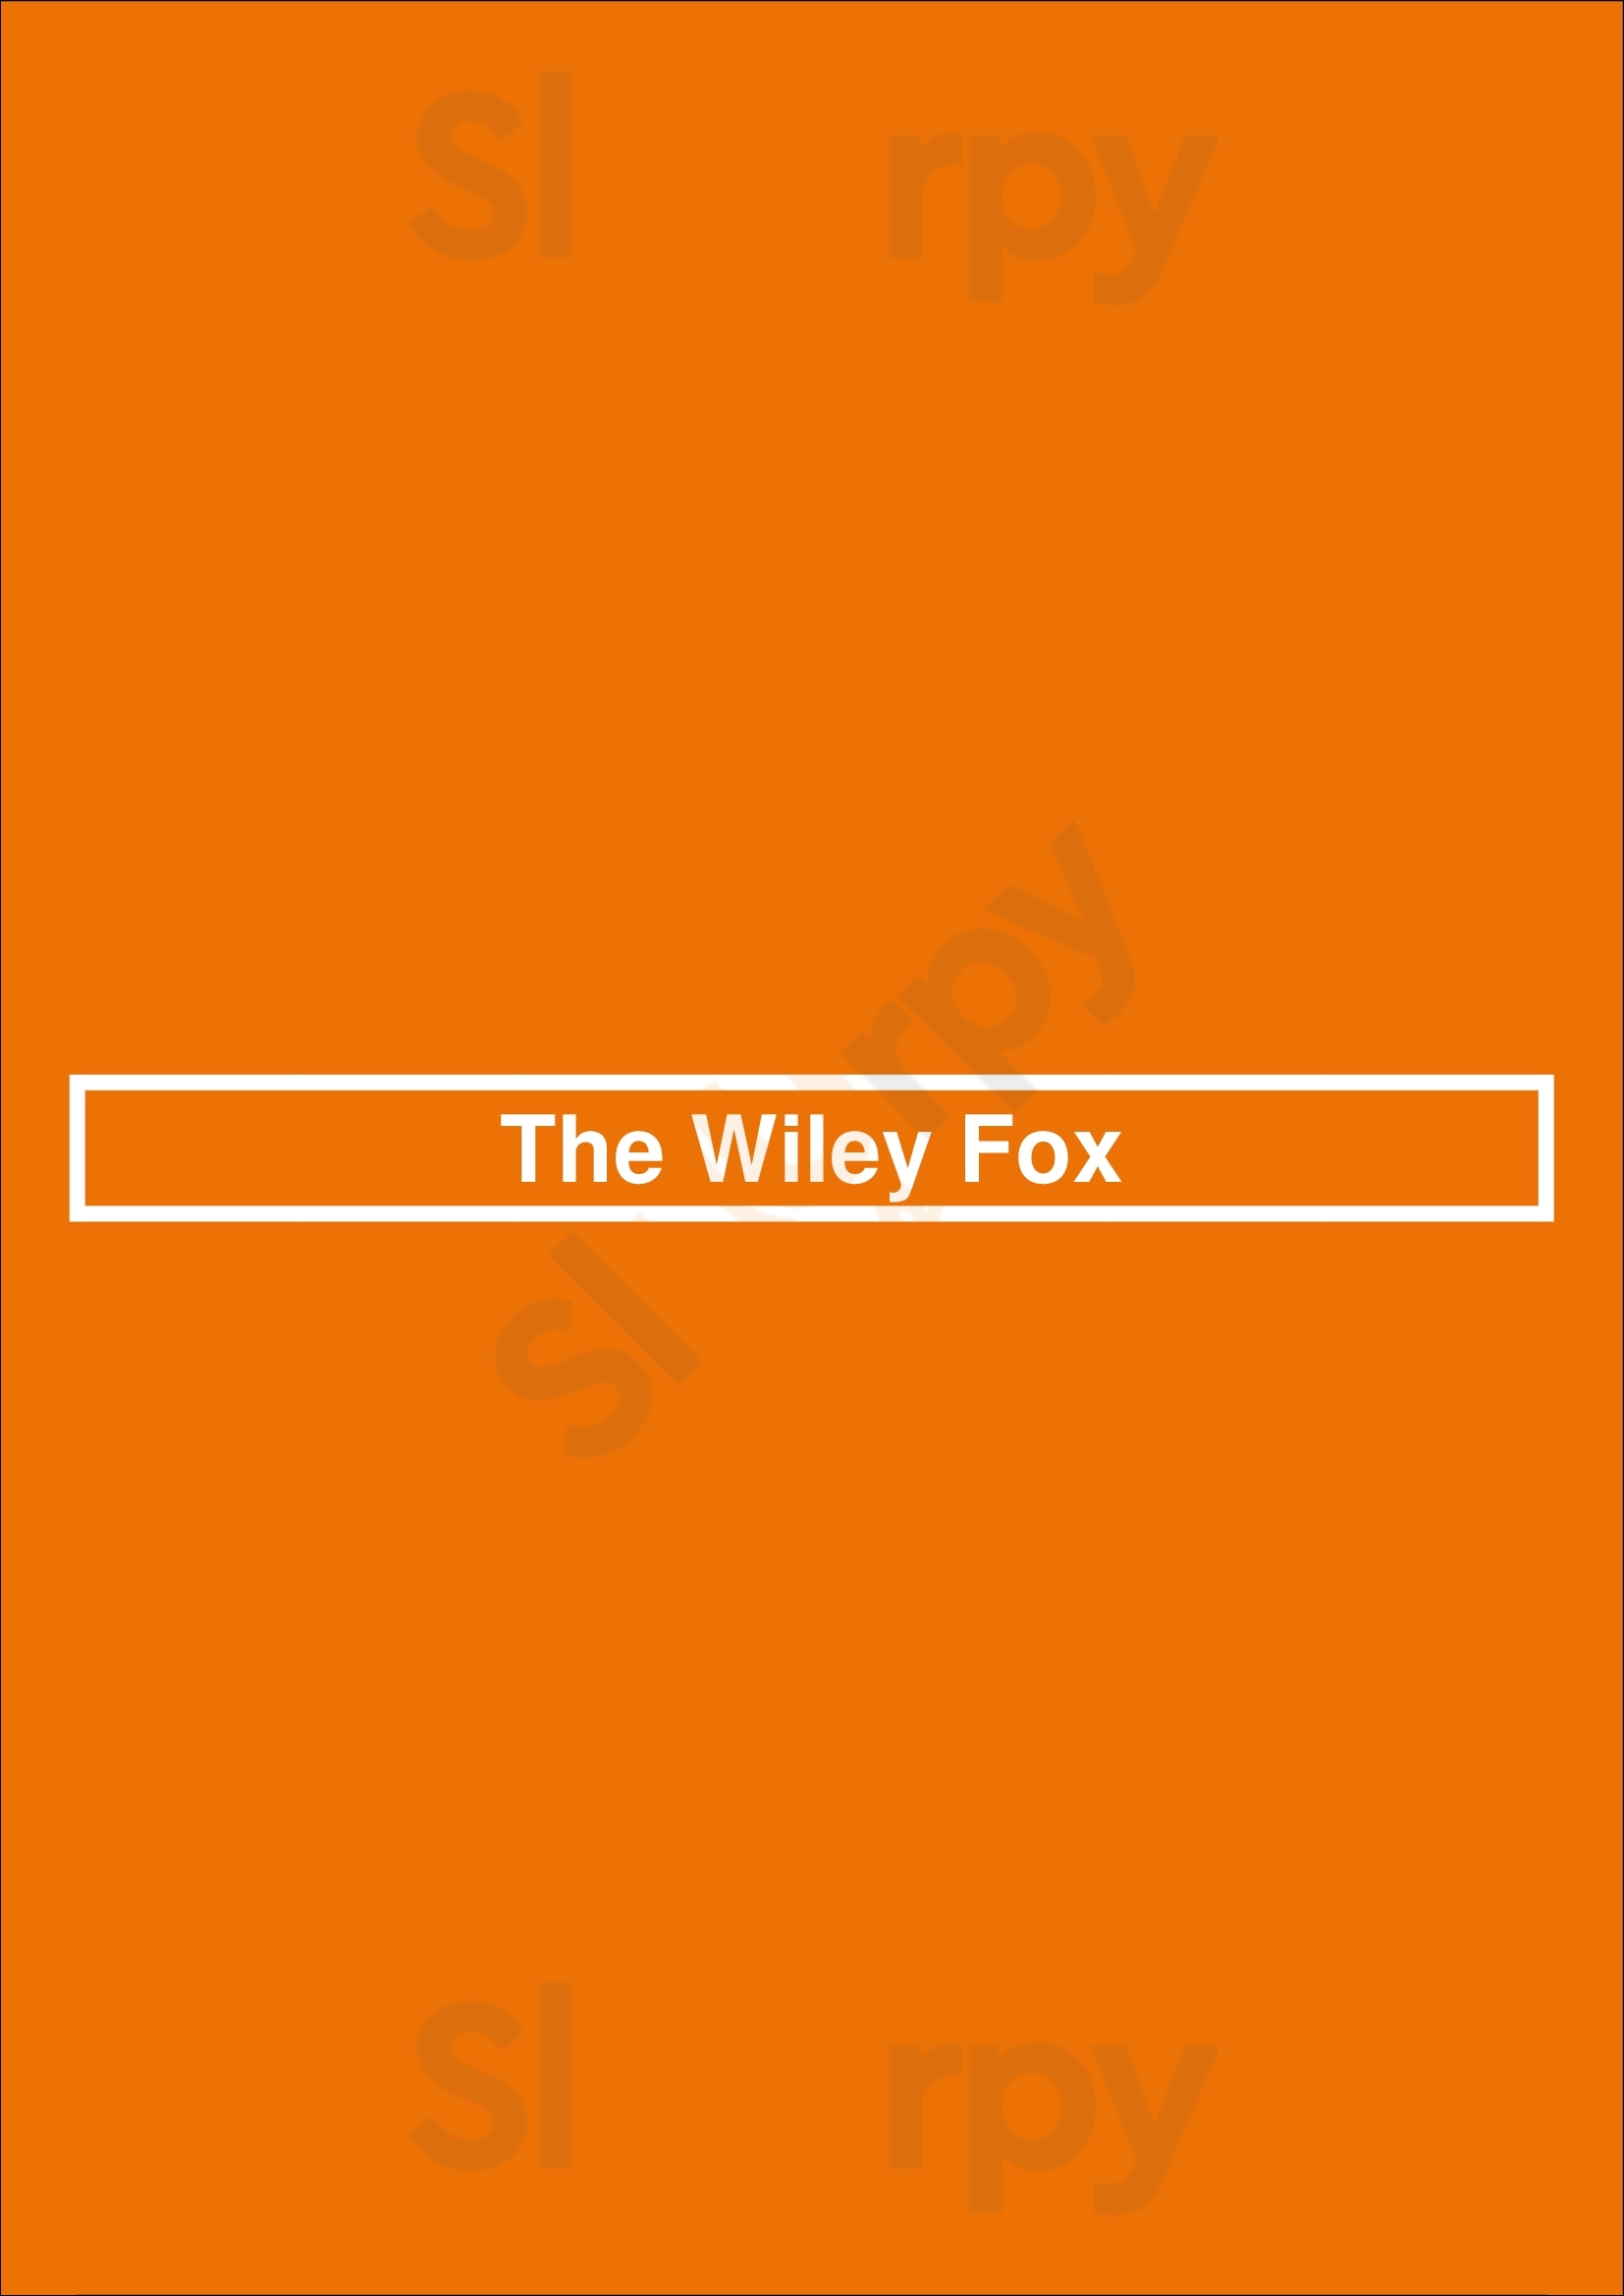 The Wiley Fox Dublin Menu - 1